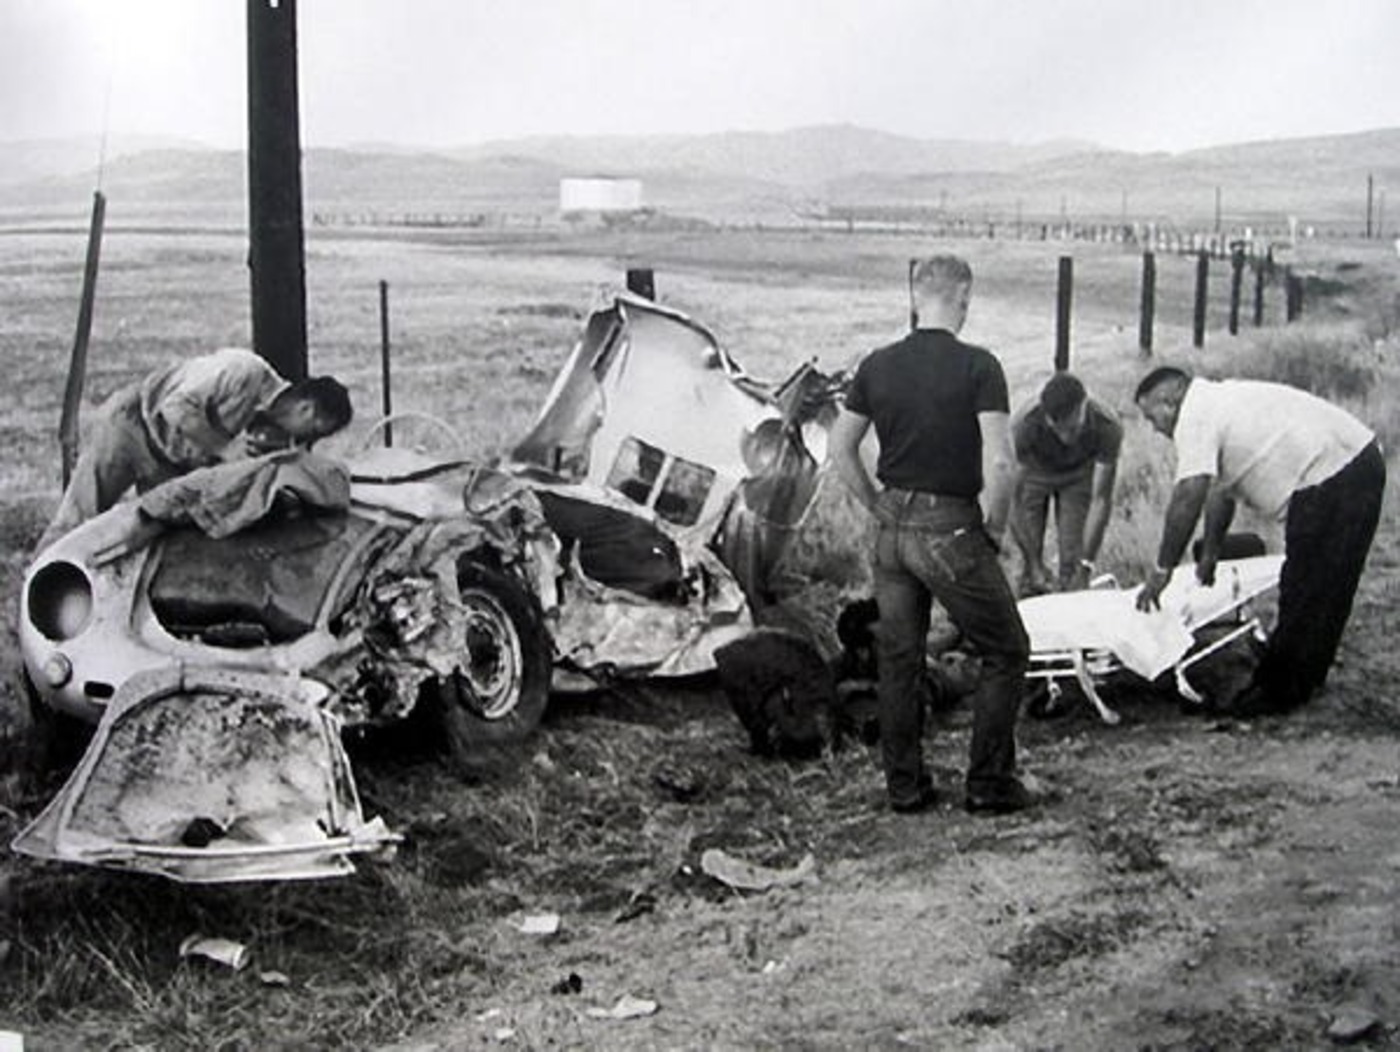 Z pohledu na zdemolovaný vůz je jasné, že herec neměl šanci přežít.